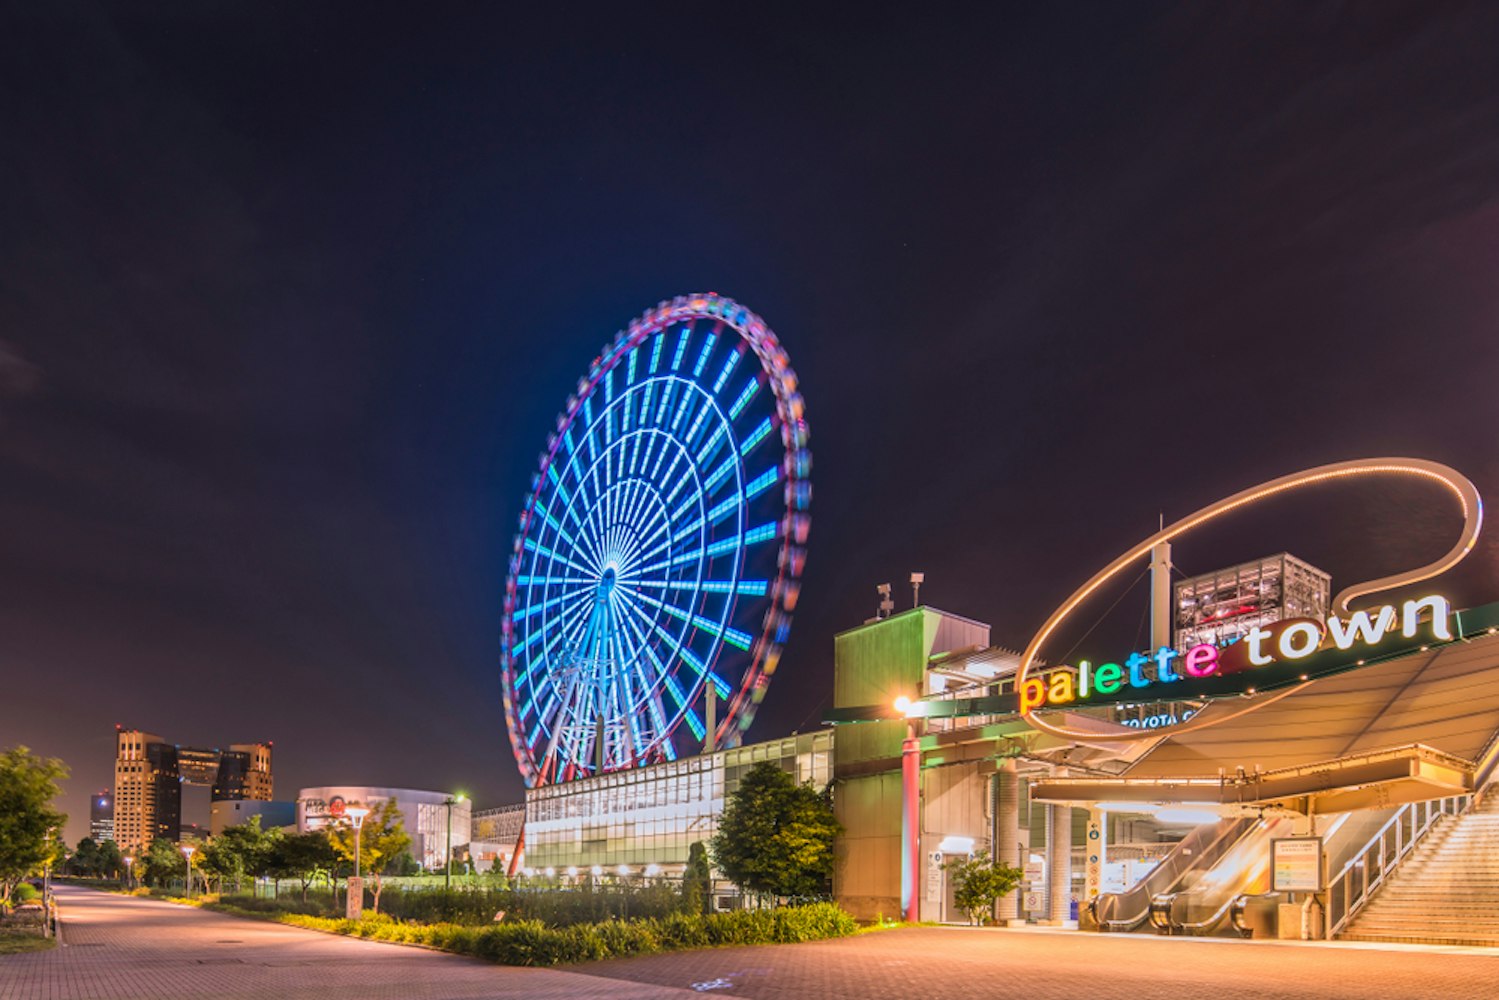 Odaiba Illuminated Palette Town Ferris Wheel